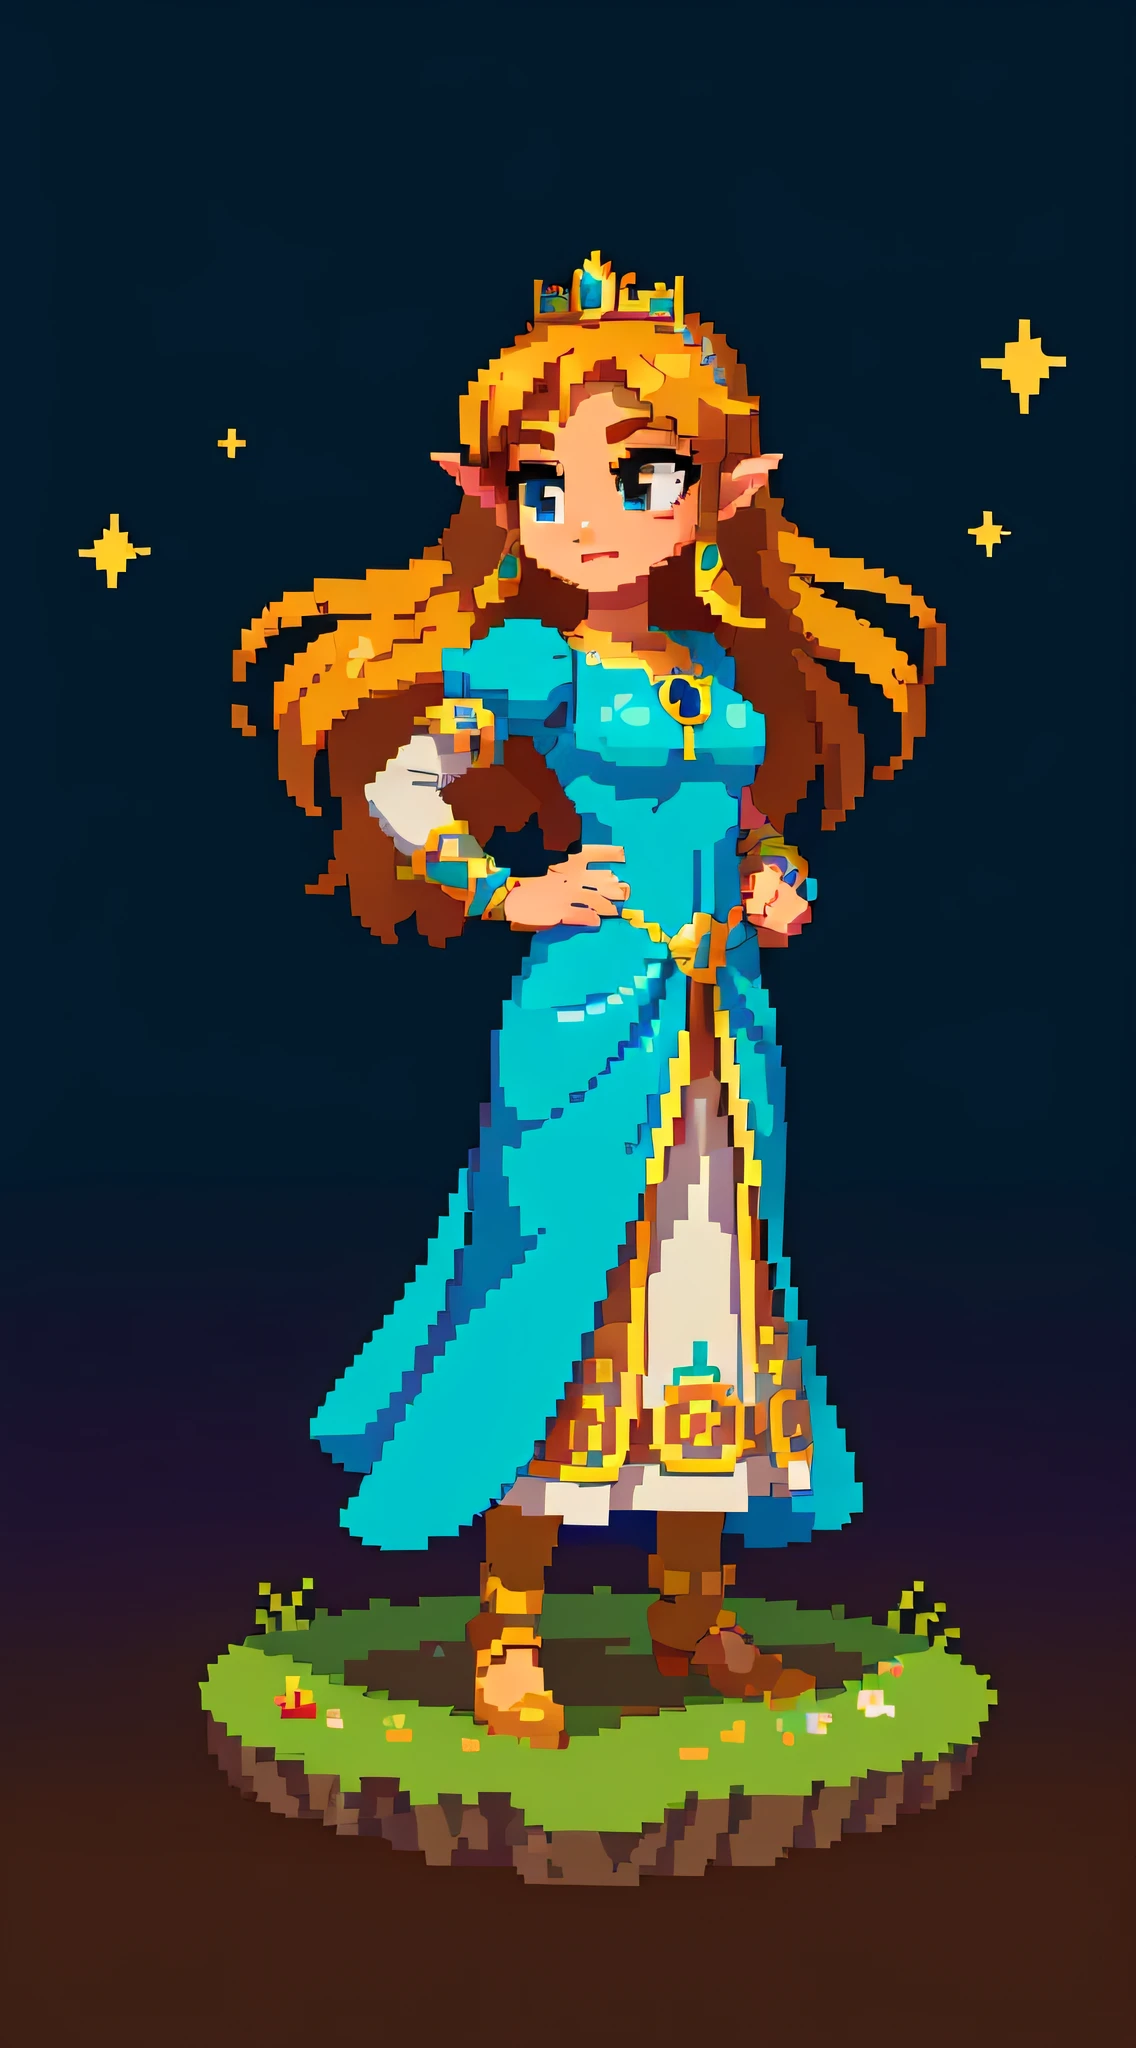 La princesa Zelda retratada en un estilo pixel art, de pie con gracia sobre un fondo simple de una noche estrellada, su icónico vestido y su tiara brillan con vibrantes colores de píxeles, Evocando una sensación nostálgica de la estética de los videojuegos clásicos., arte de pixel, creado con Piskel